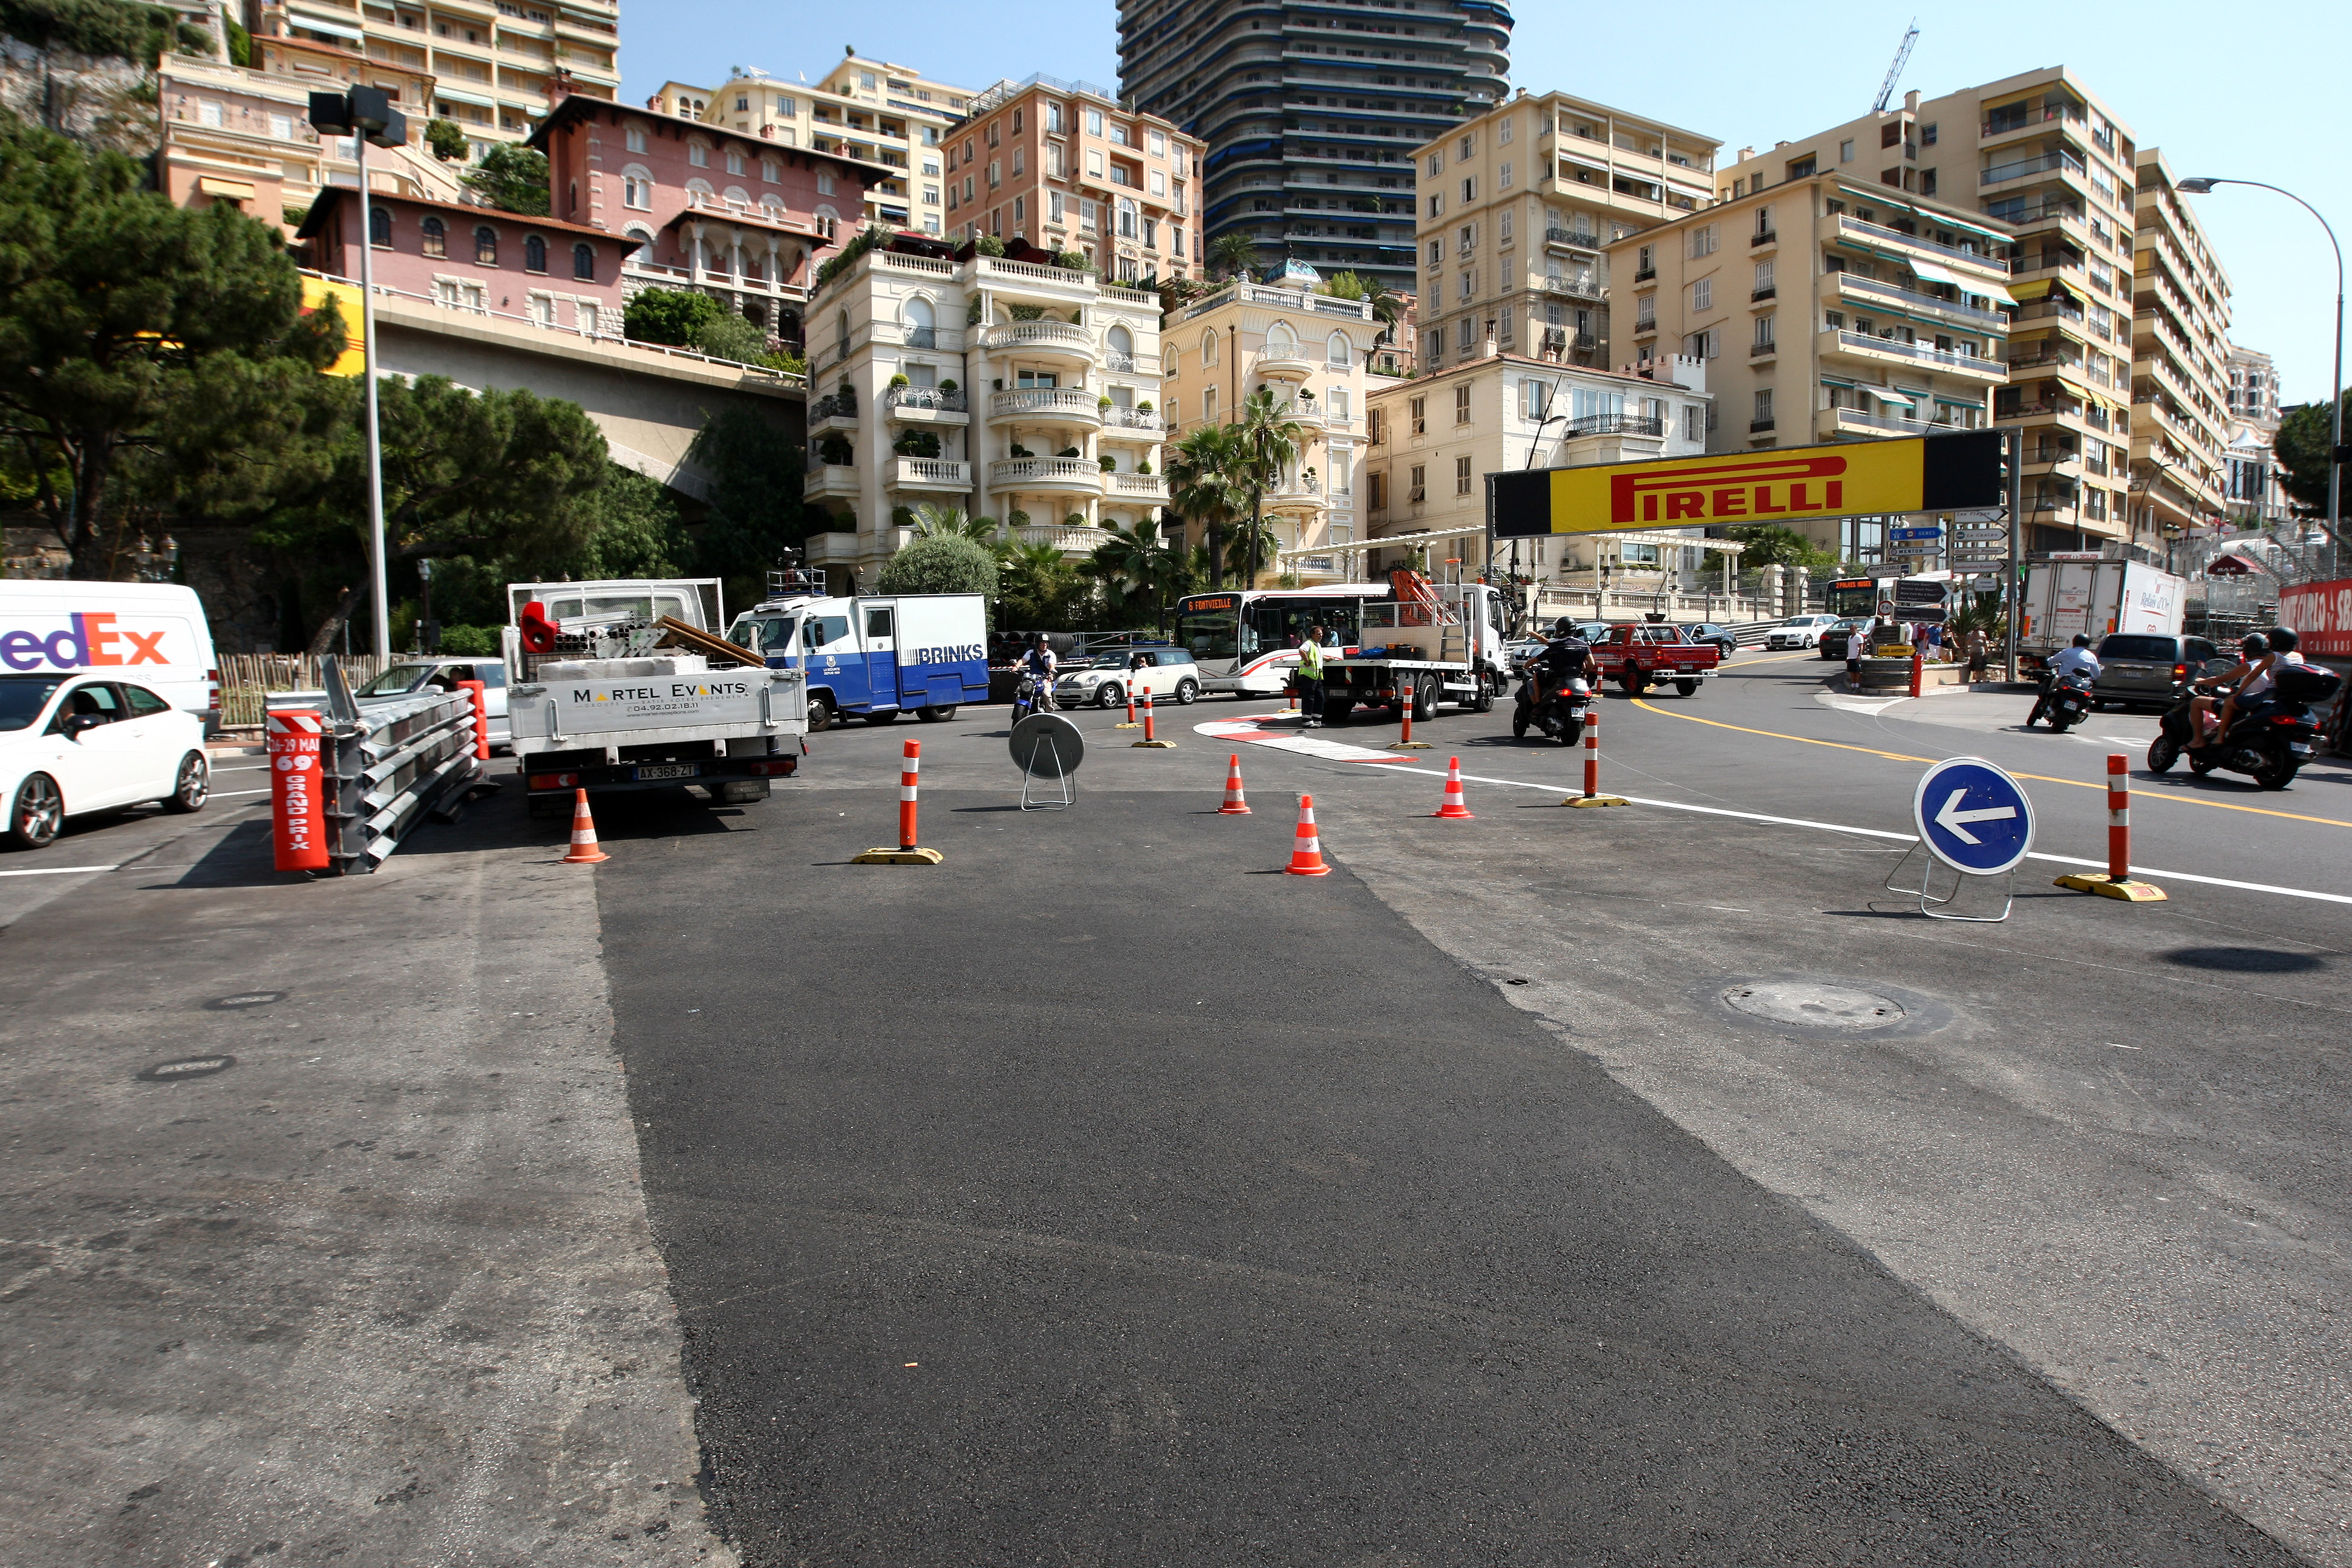 Circuit Monaco beschadigd door brandende truck